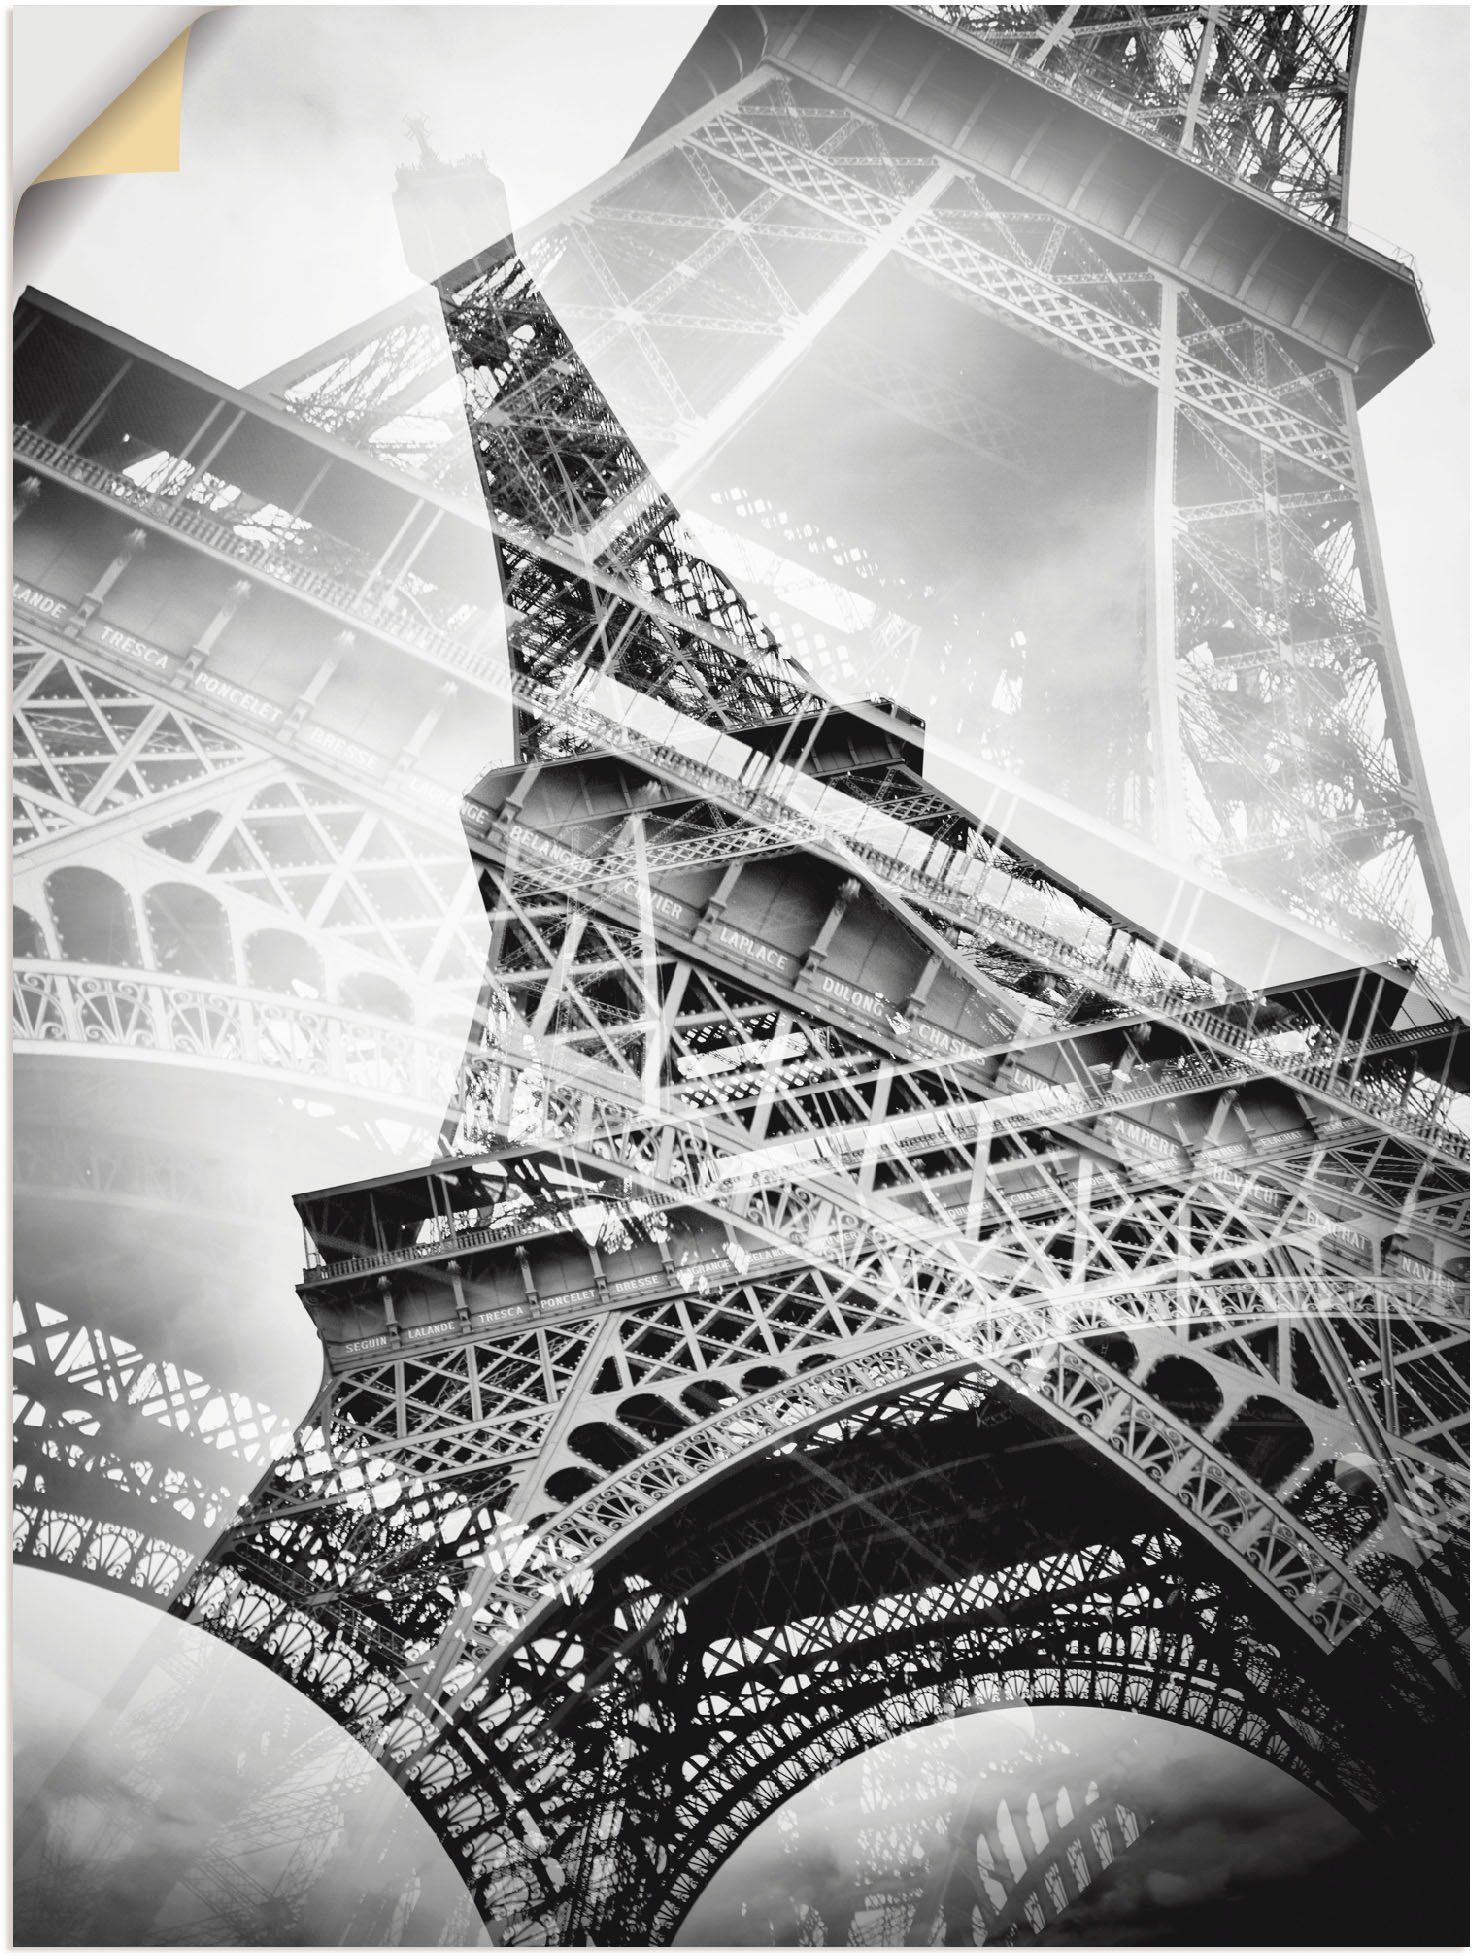 Artland Artprint De dubbele Eiffeltoren in vele afmetingen & productsoorten - artprint van aluminium / artprint voor buiten, artprint op linnen, poster, muursticker / wandfolie ook